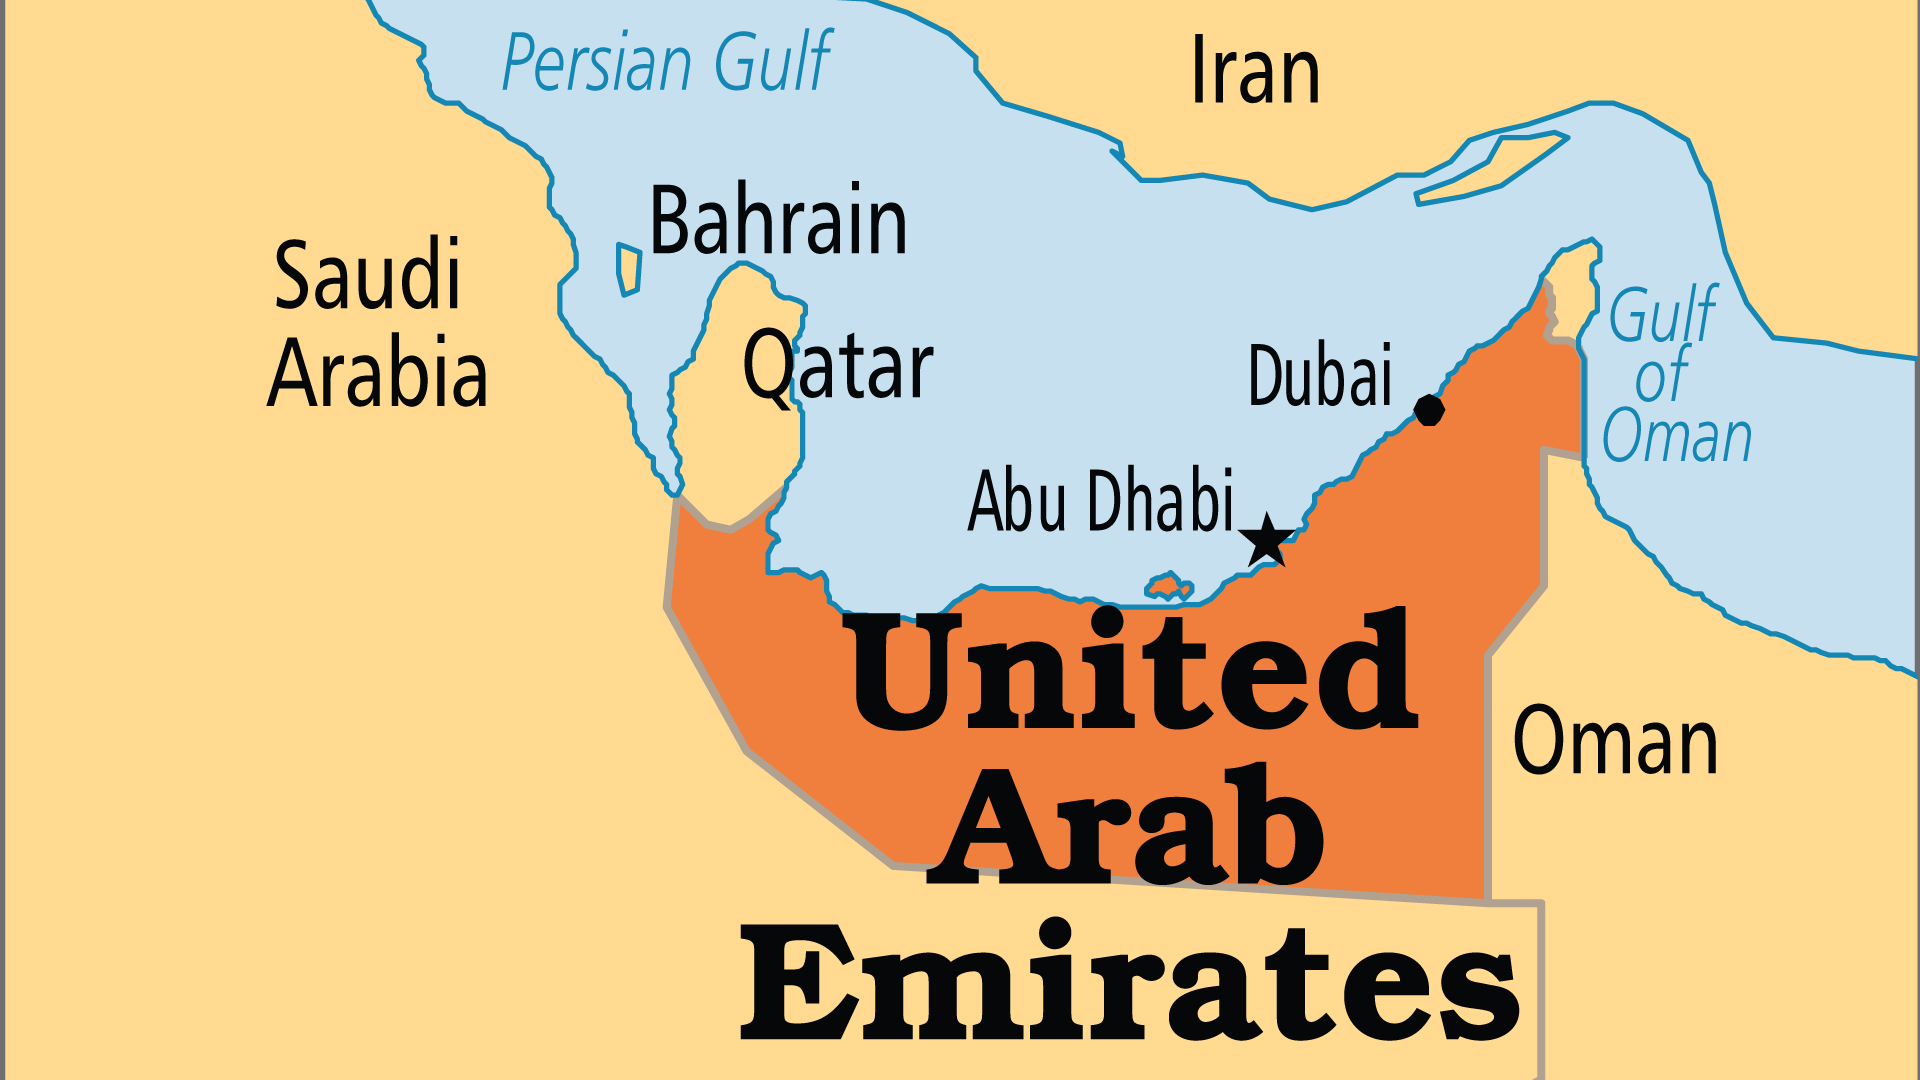 United Arab Emirates (Operation World)